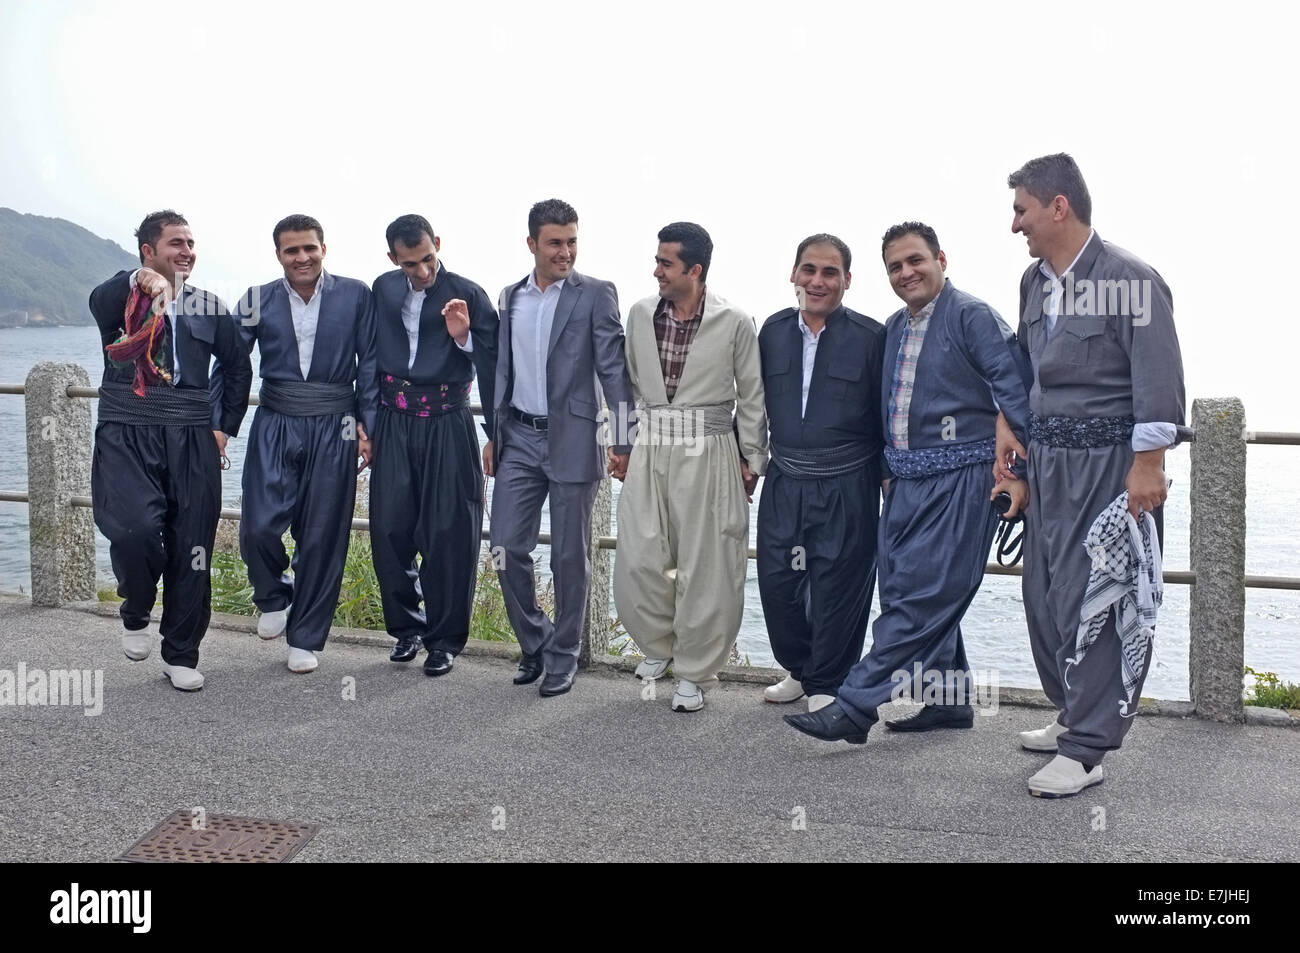 Un gruppo di uomini Kurdistani celebrare i loro amici imminente matrimonio. Lo sposo è il più lontano a destra in questa foto. Foto Stock